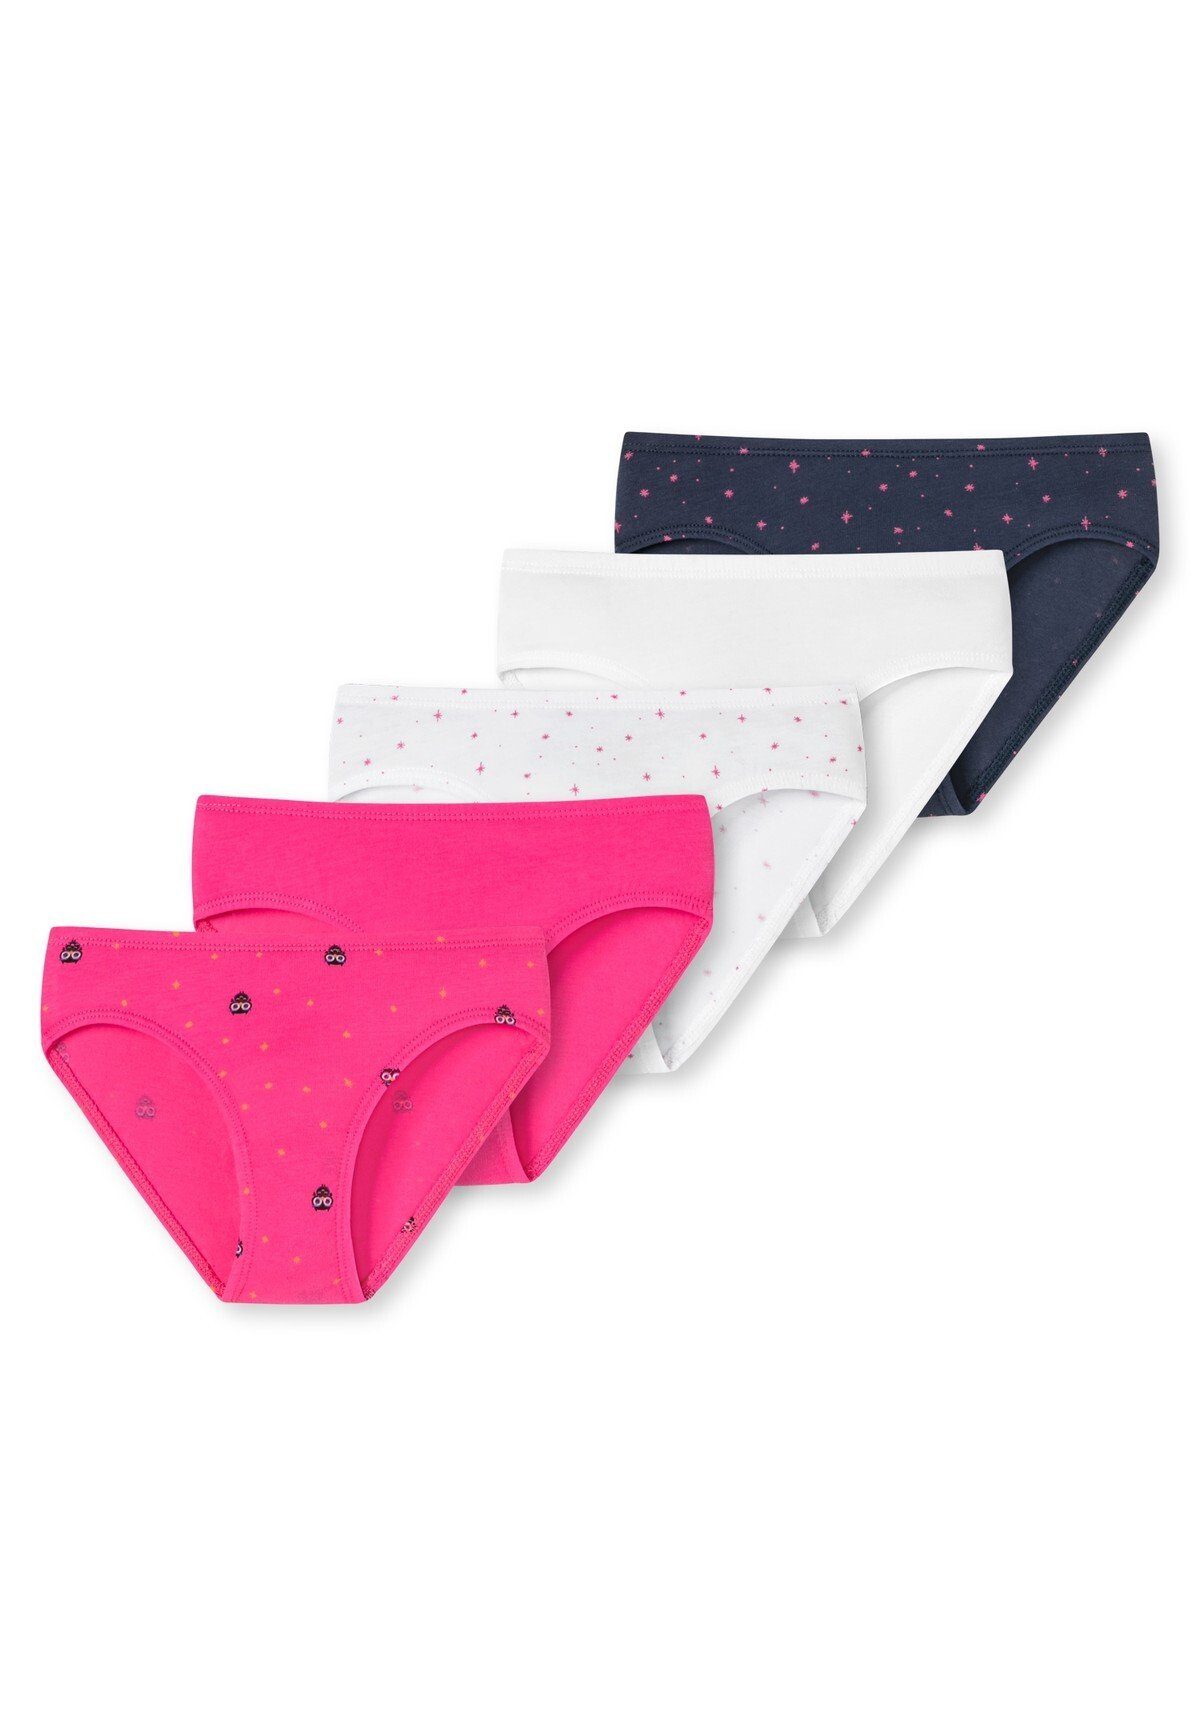 Schiesser Slip Mädchen Slips 5er Pack - Unterhose, Pants, Shorts Pink/Weiß/Dunkelblau | Klassische Slips